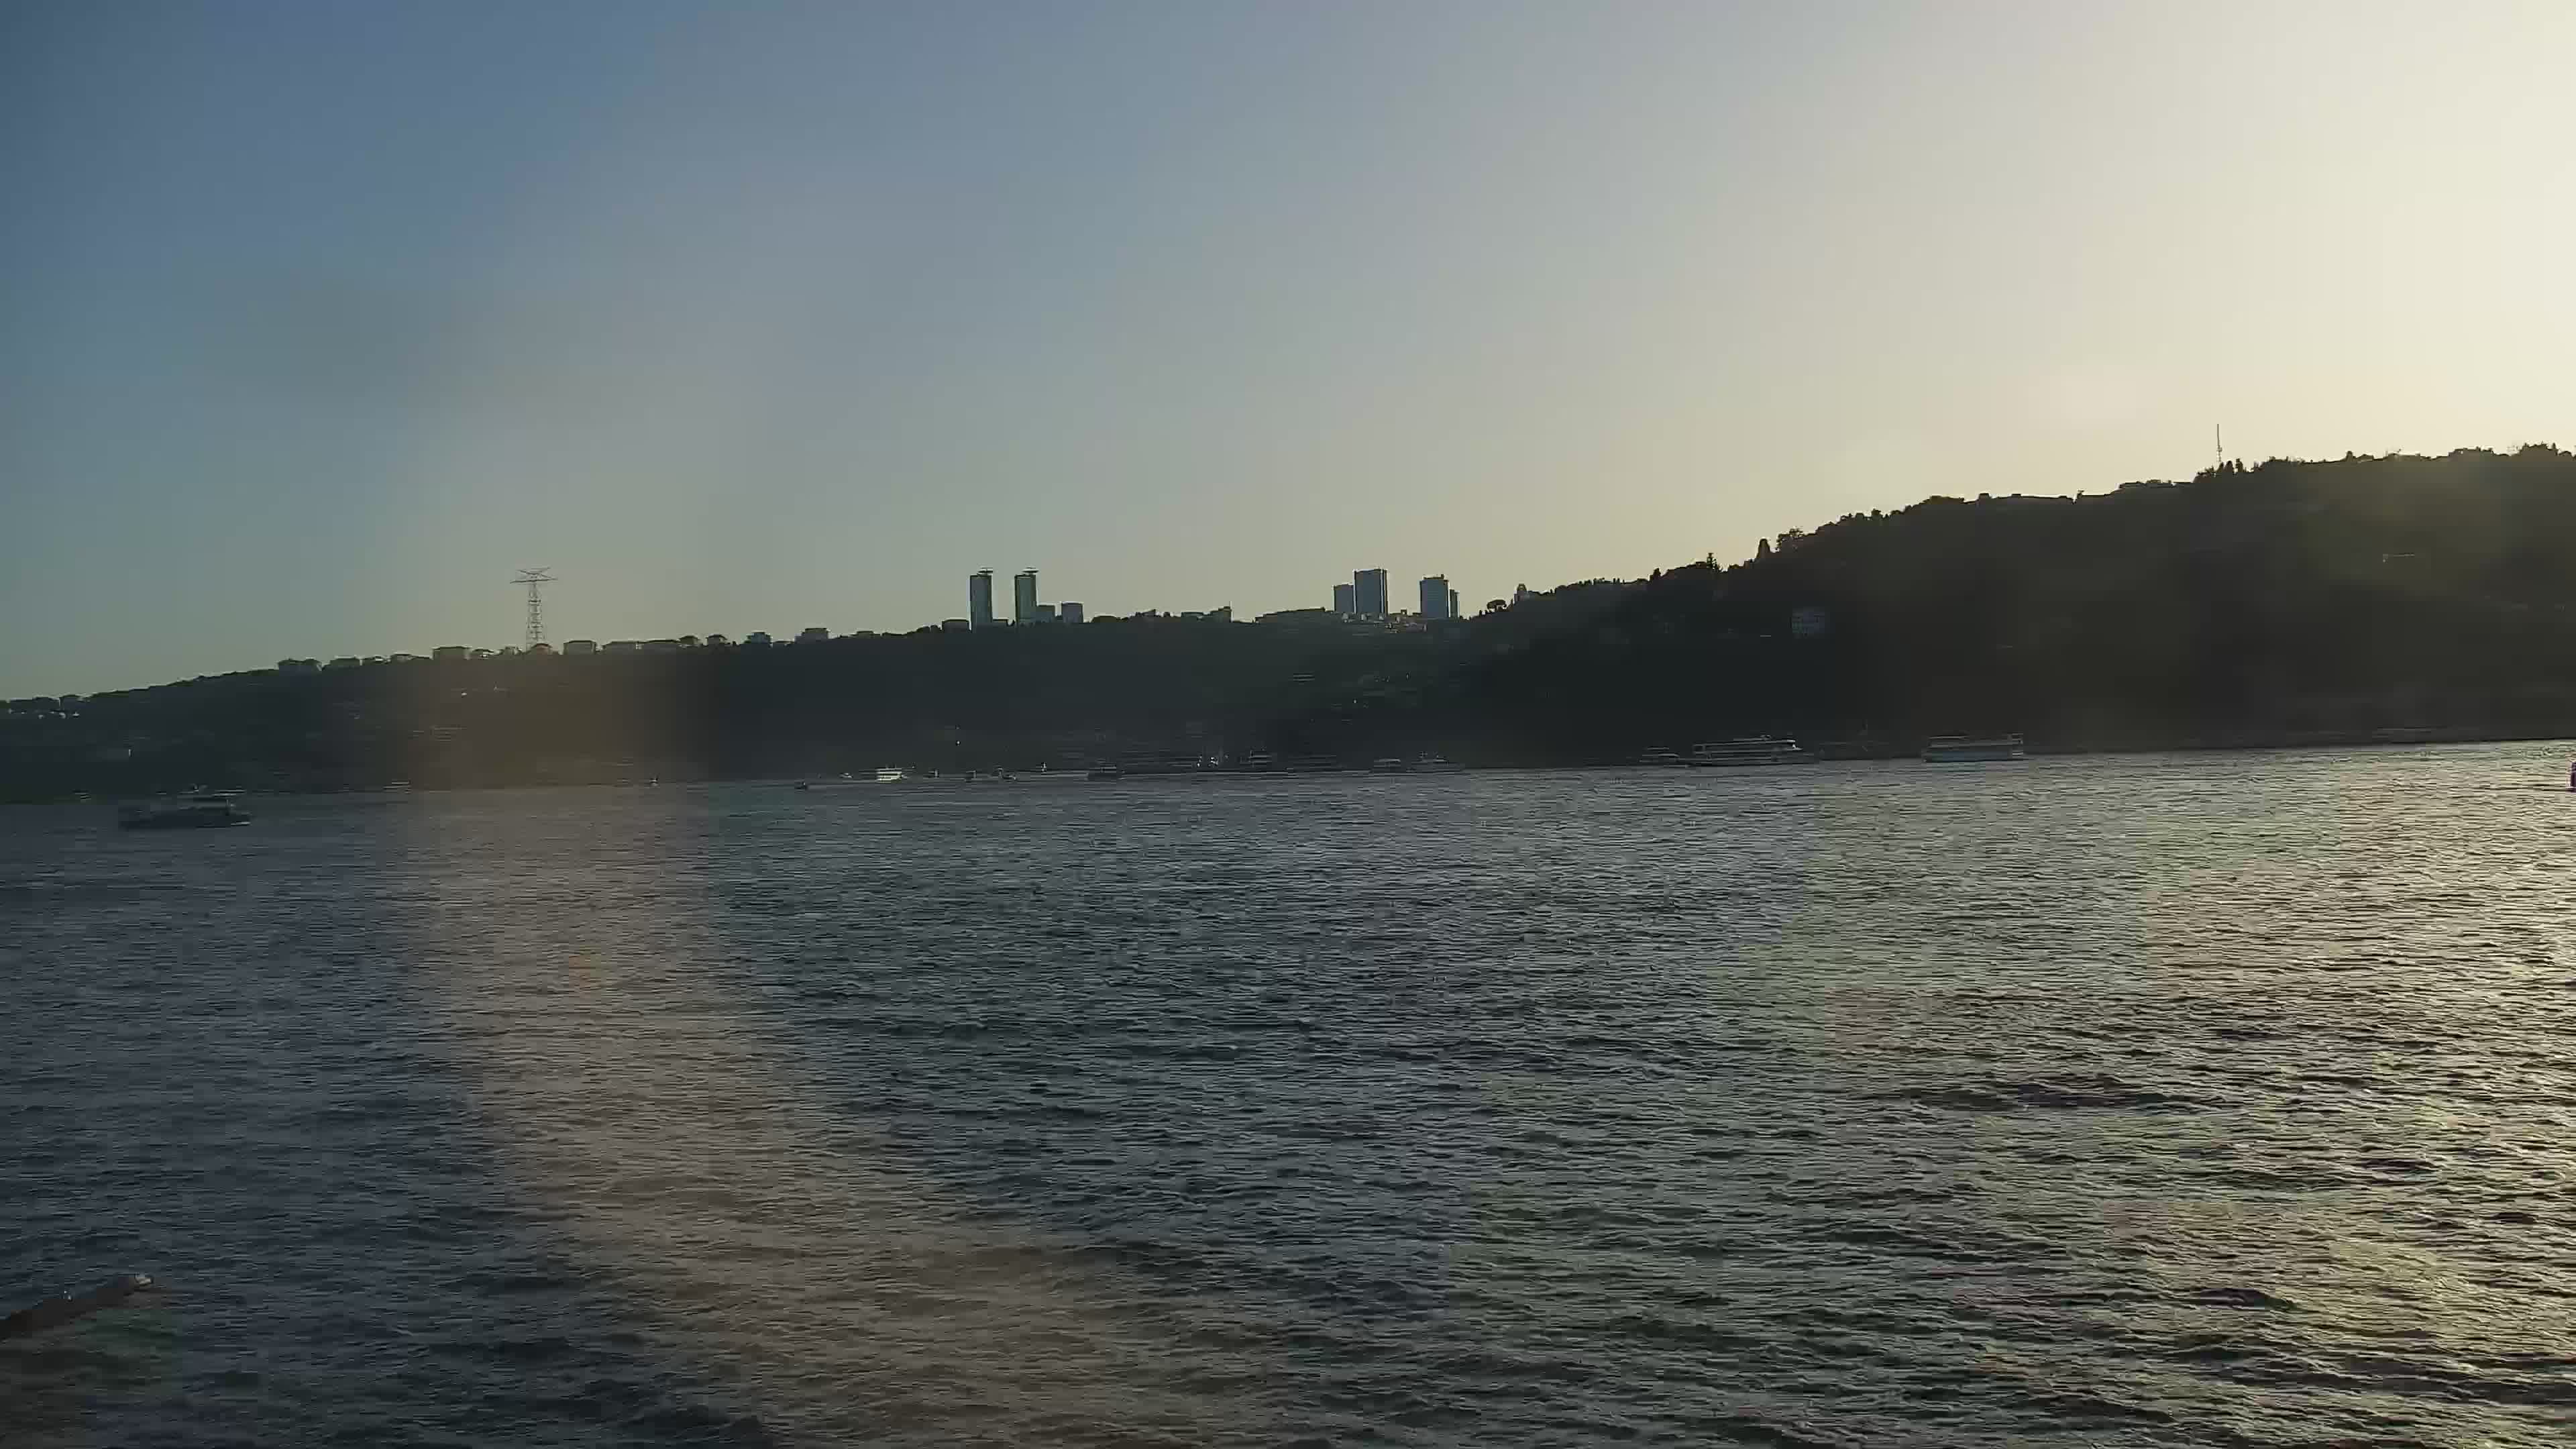 Istanbul Sun. 19:28